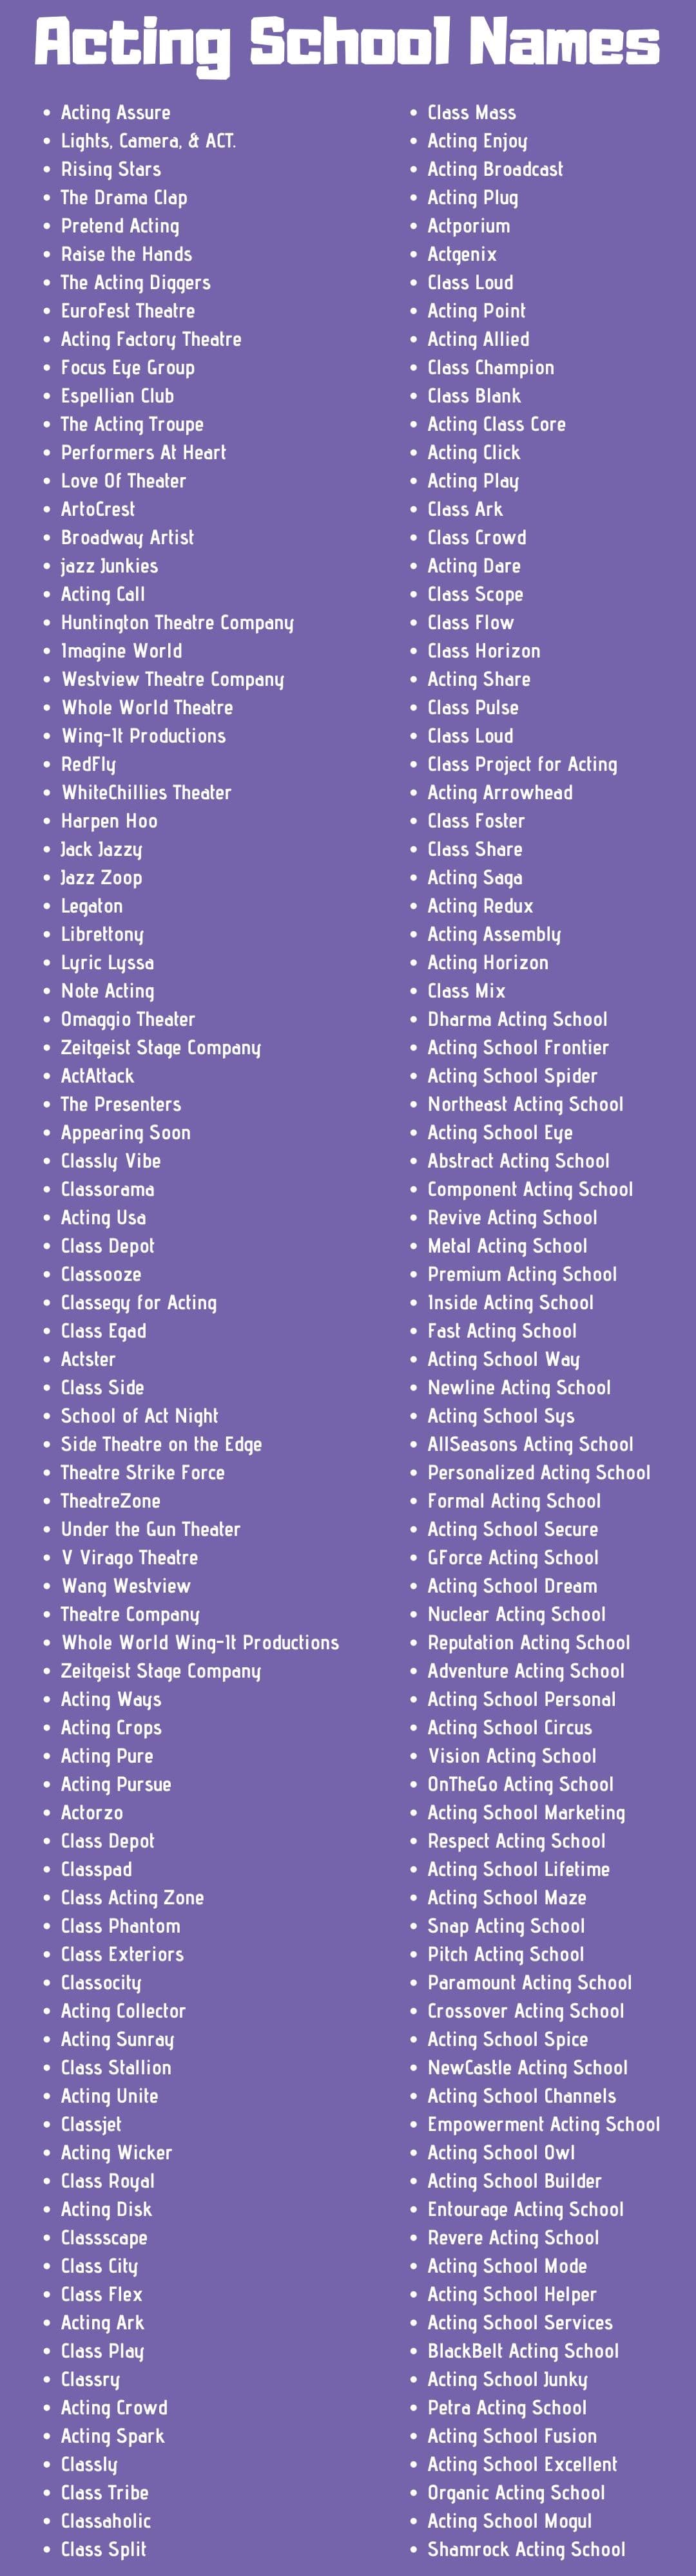 Acting School Names